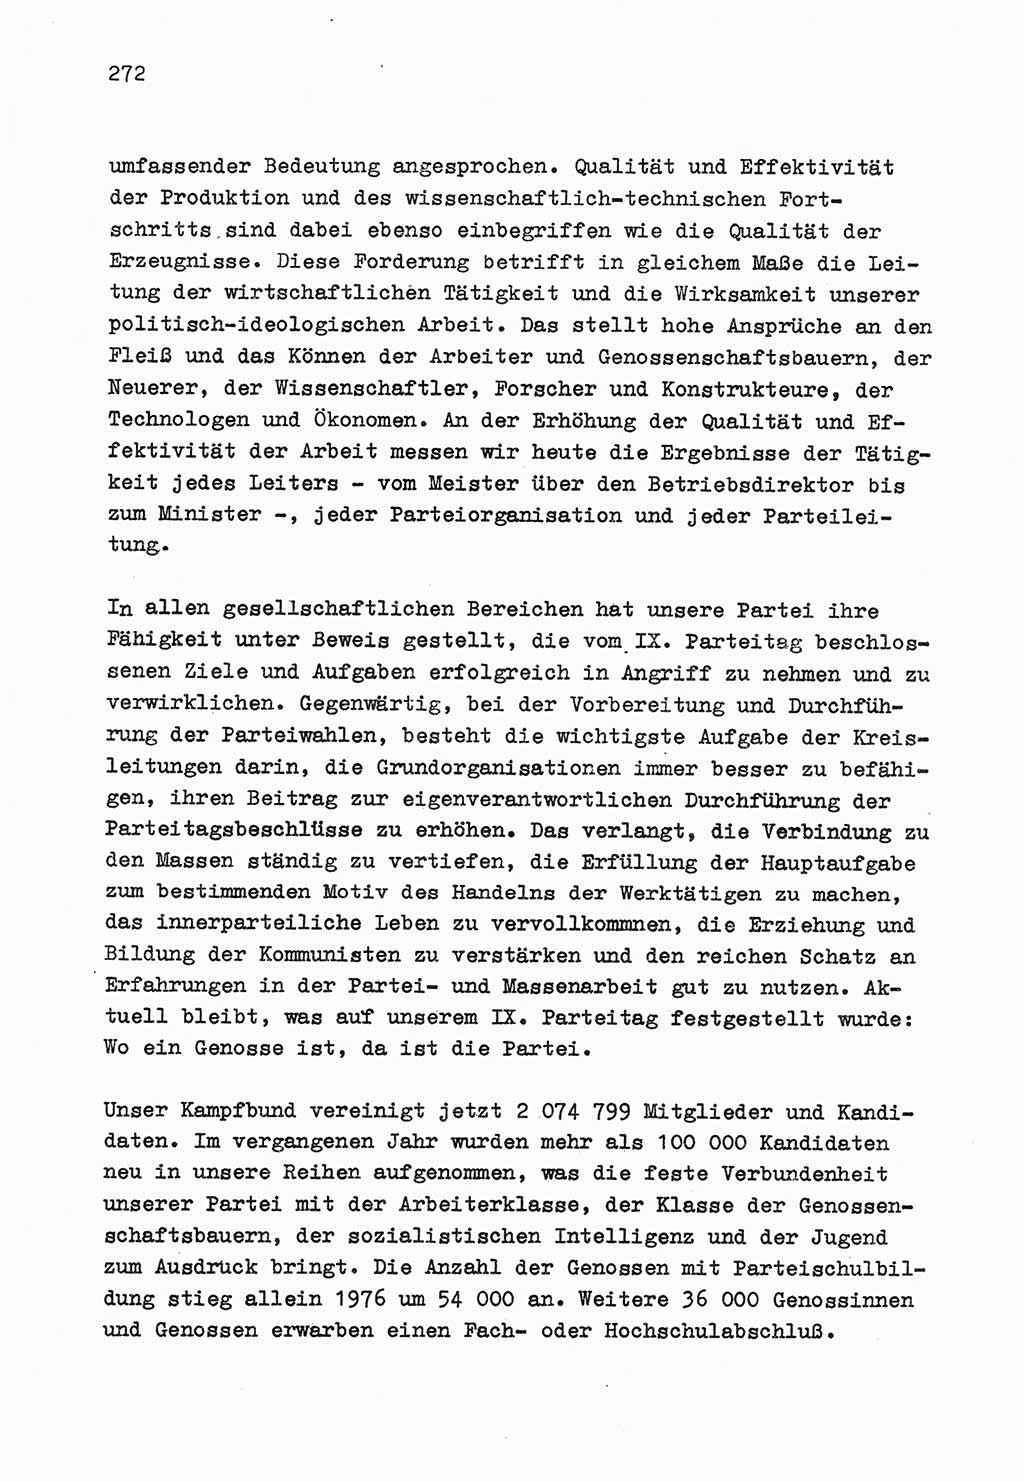 Zu Fragen der Parteiarbeit [Sozialistische Einheitspartei Deutschlands (SED) Deutsche Demokratische Republik (DDR)] 1979, Seite 272 (Fr. PA SED DDR 1979, S. 272)